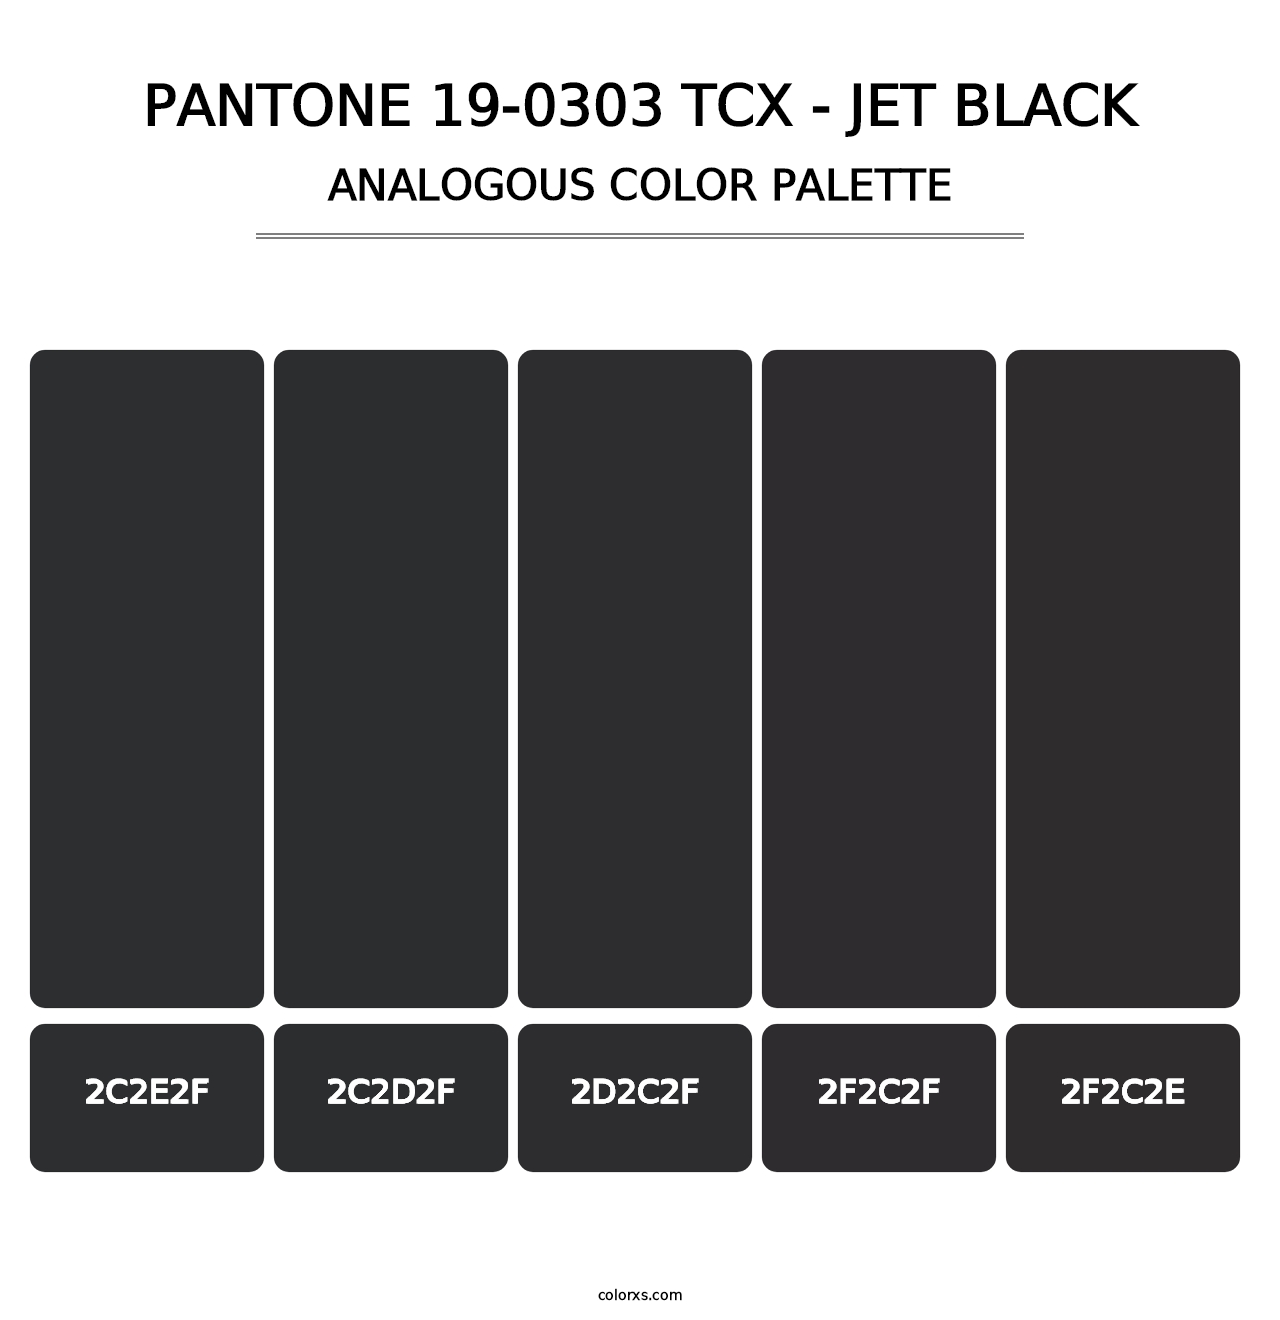 PANTONE 19-0303 TCX - Jet Black - Analogous Color Palette